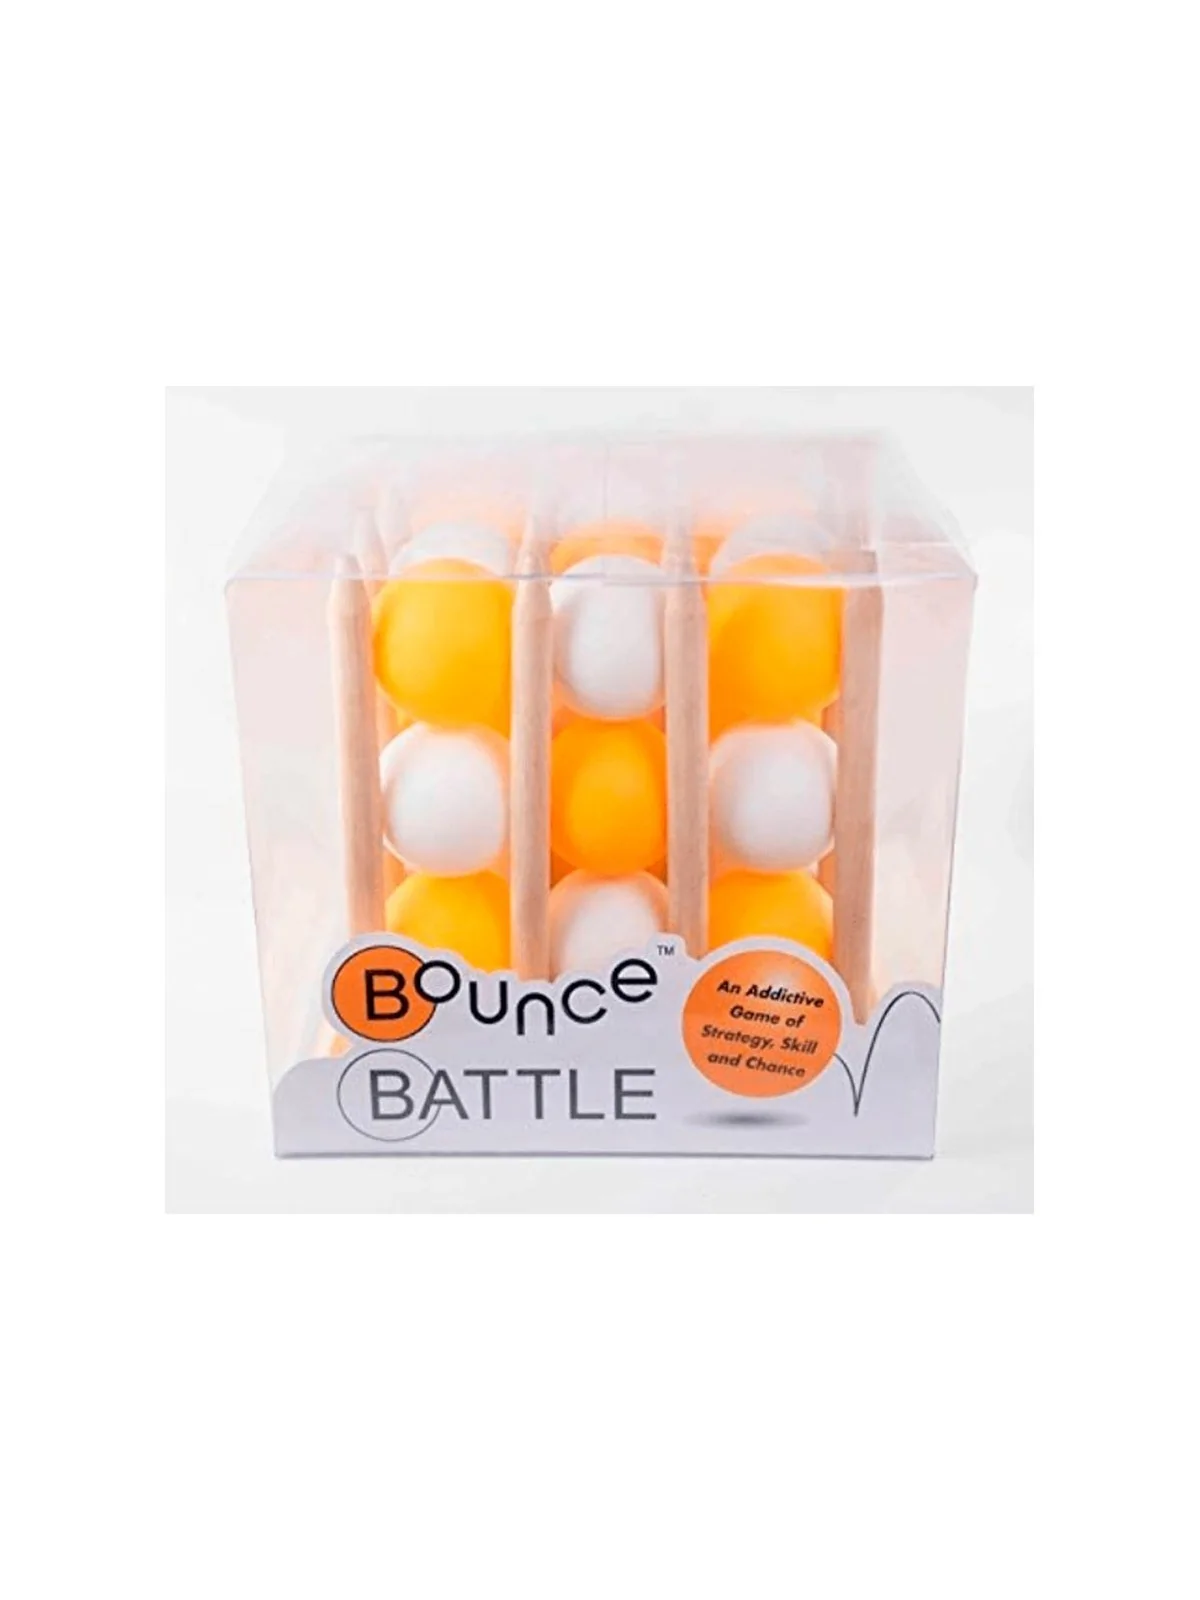 Comprar Bounce Battle barato al mejor precio 20,66 € de SD GAMES